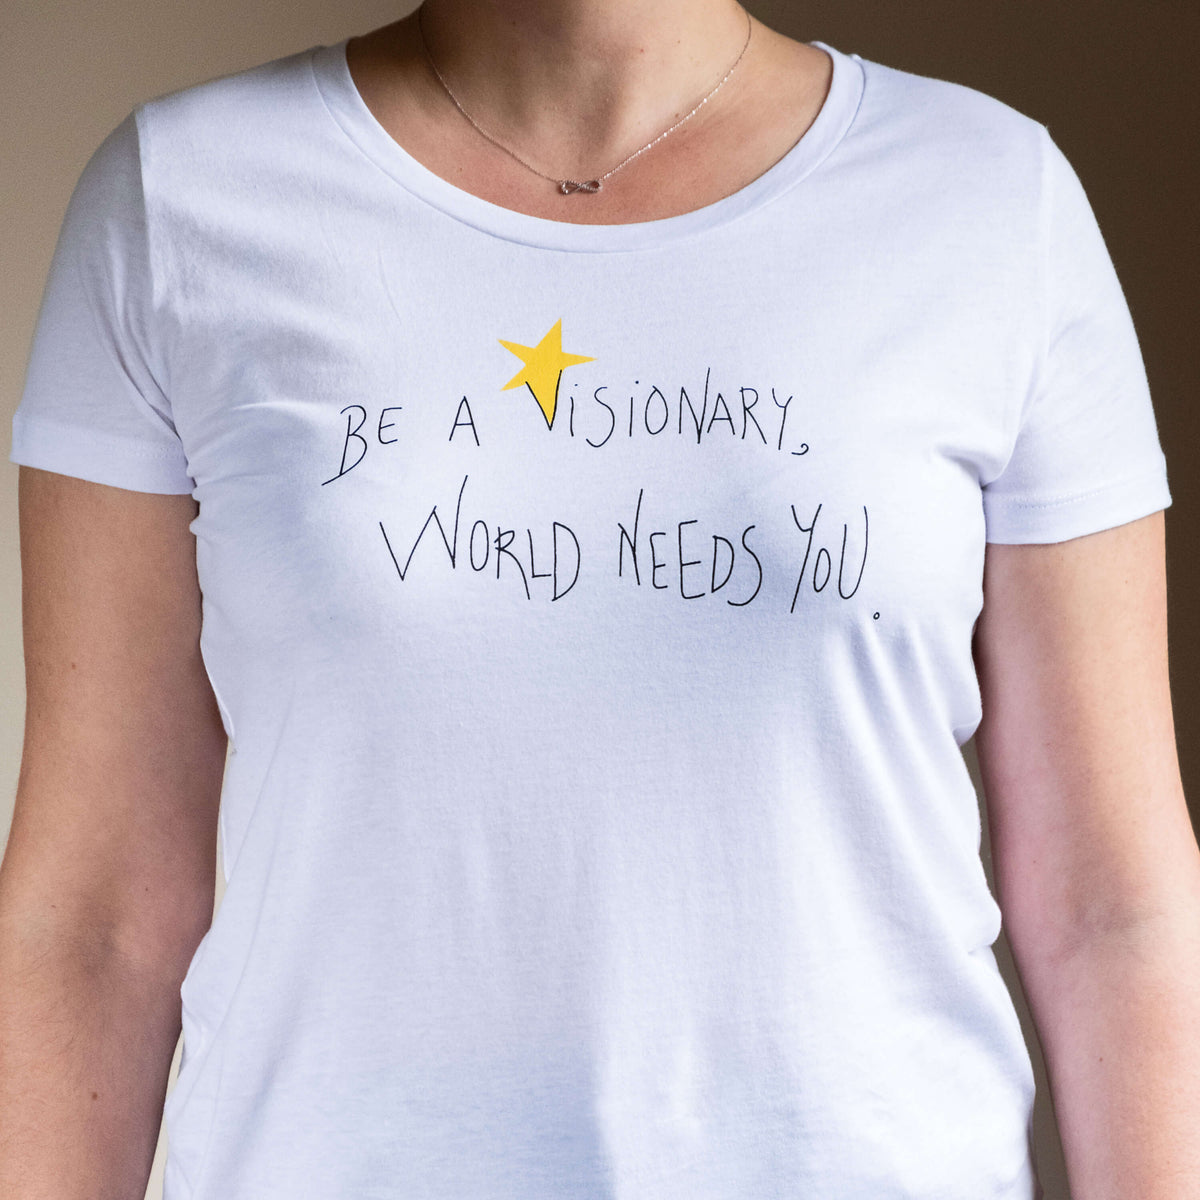 Camiseta blanca de mujer, de algodón orgánico y estampado a mano con tintas ecológicas. Serigrafía en color negro y amarillo.